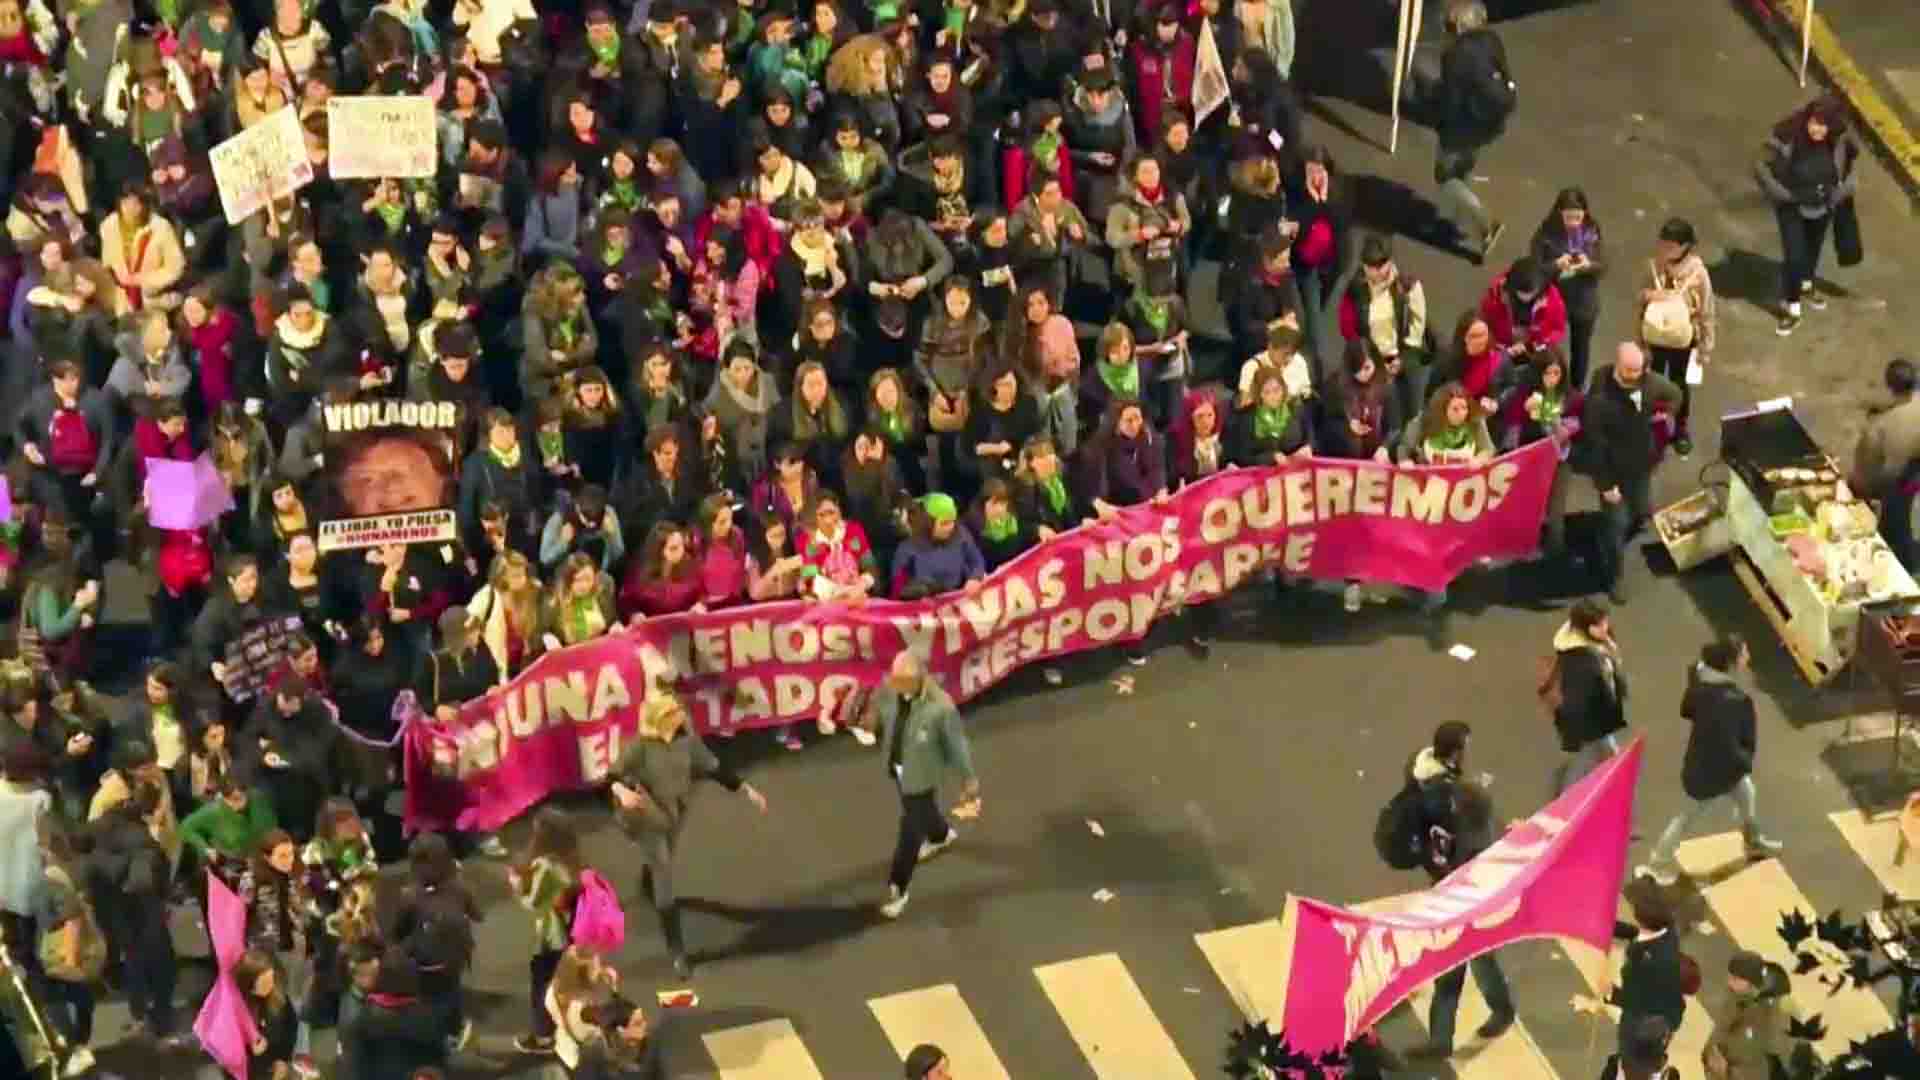 Estadísticas criminales: en 2017 hubo 11 violaciones por día en Argentina